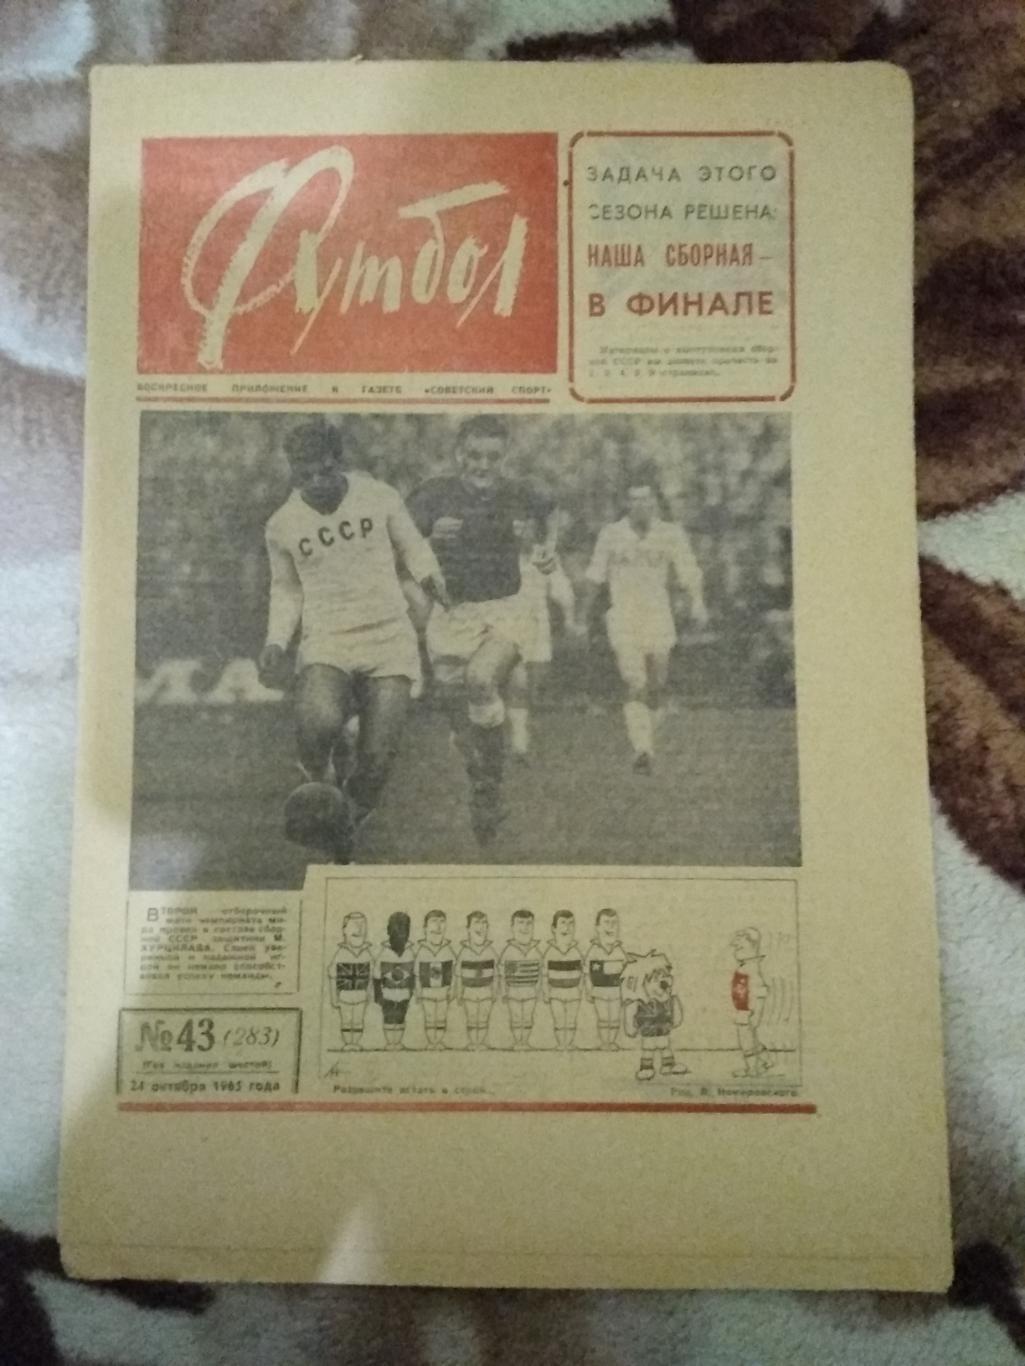 Футбол № 43 1965 г. (Дания - СССР ОЧМ).